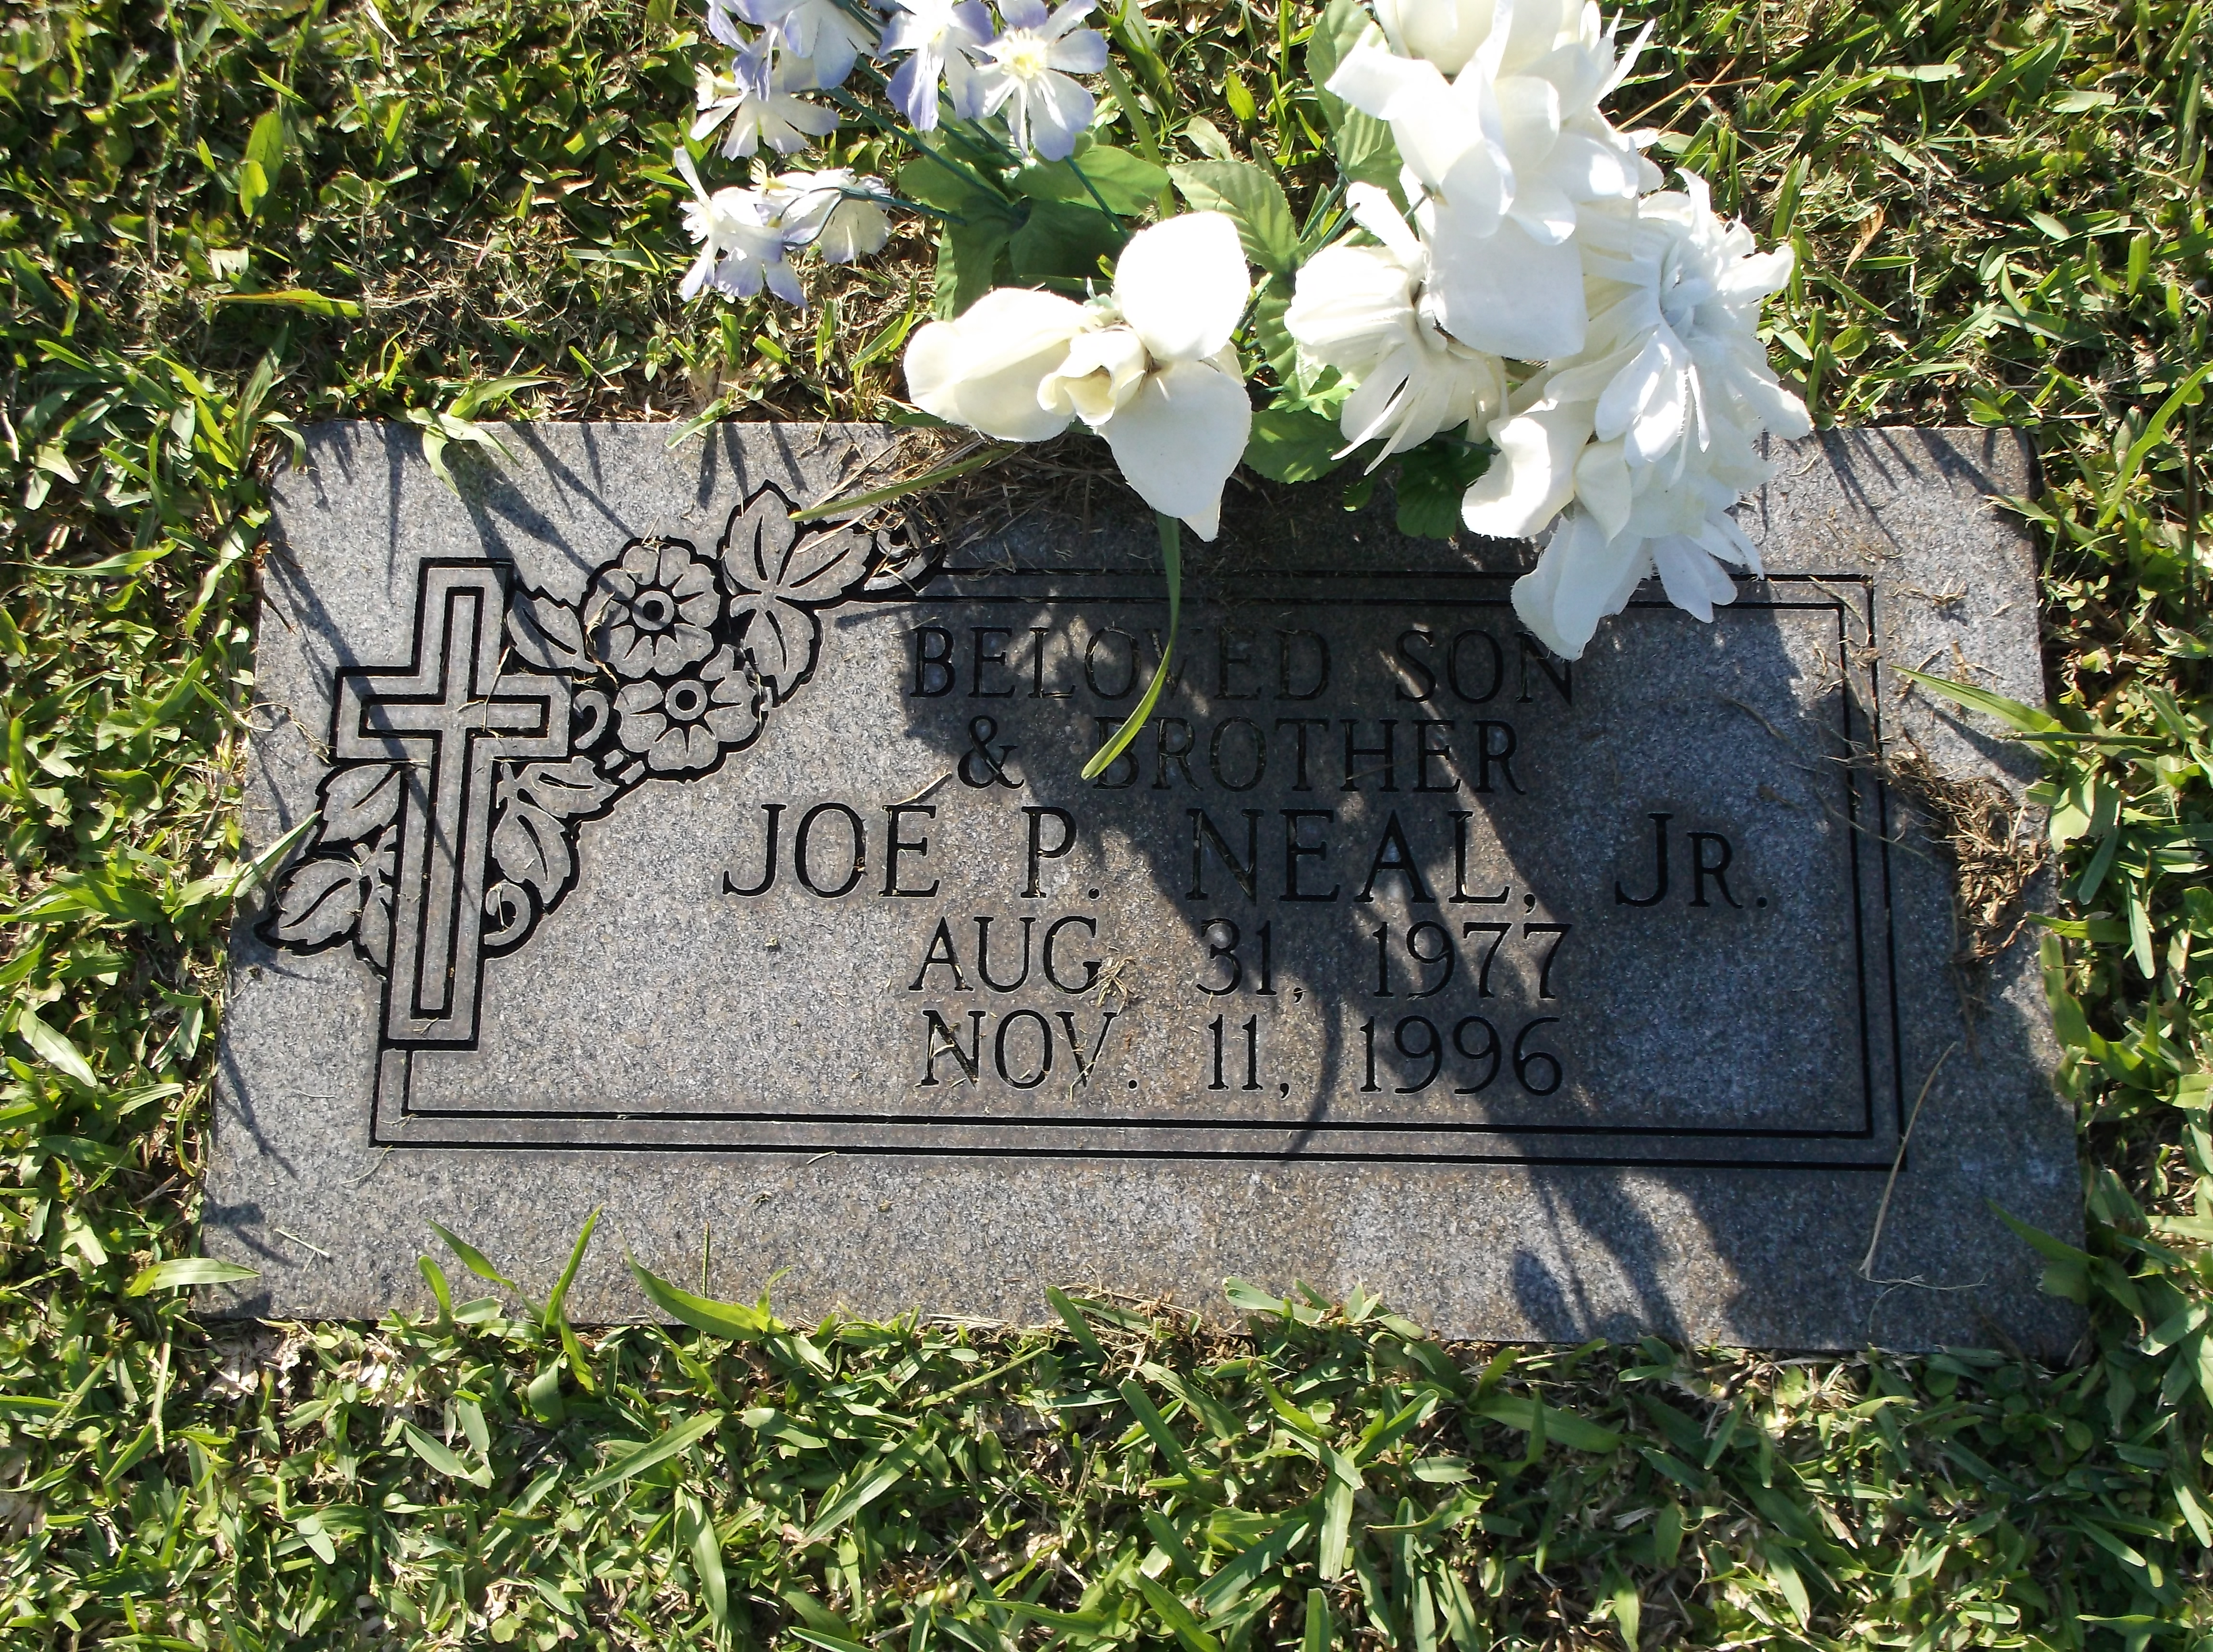 Joe P Neal, Jr